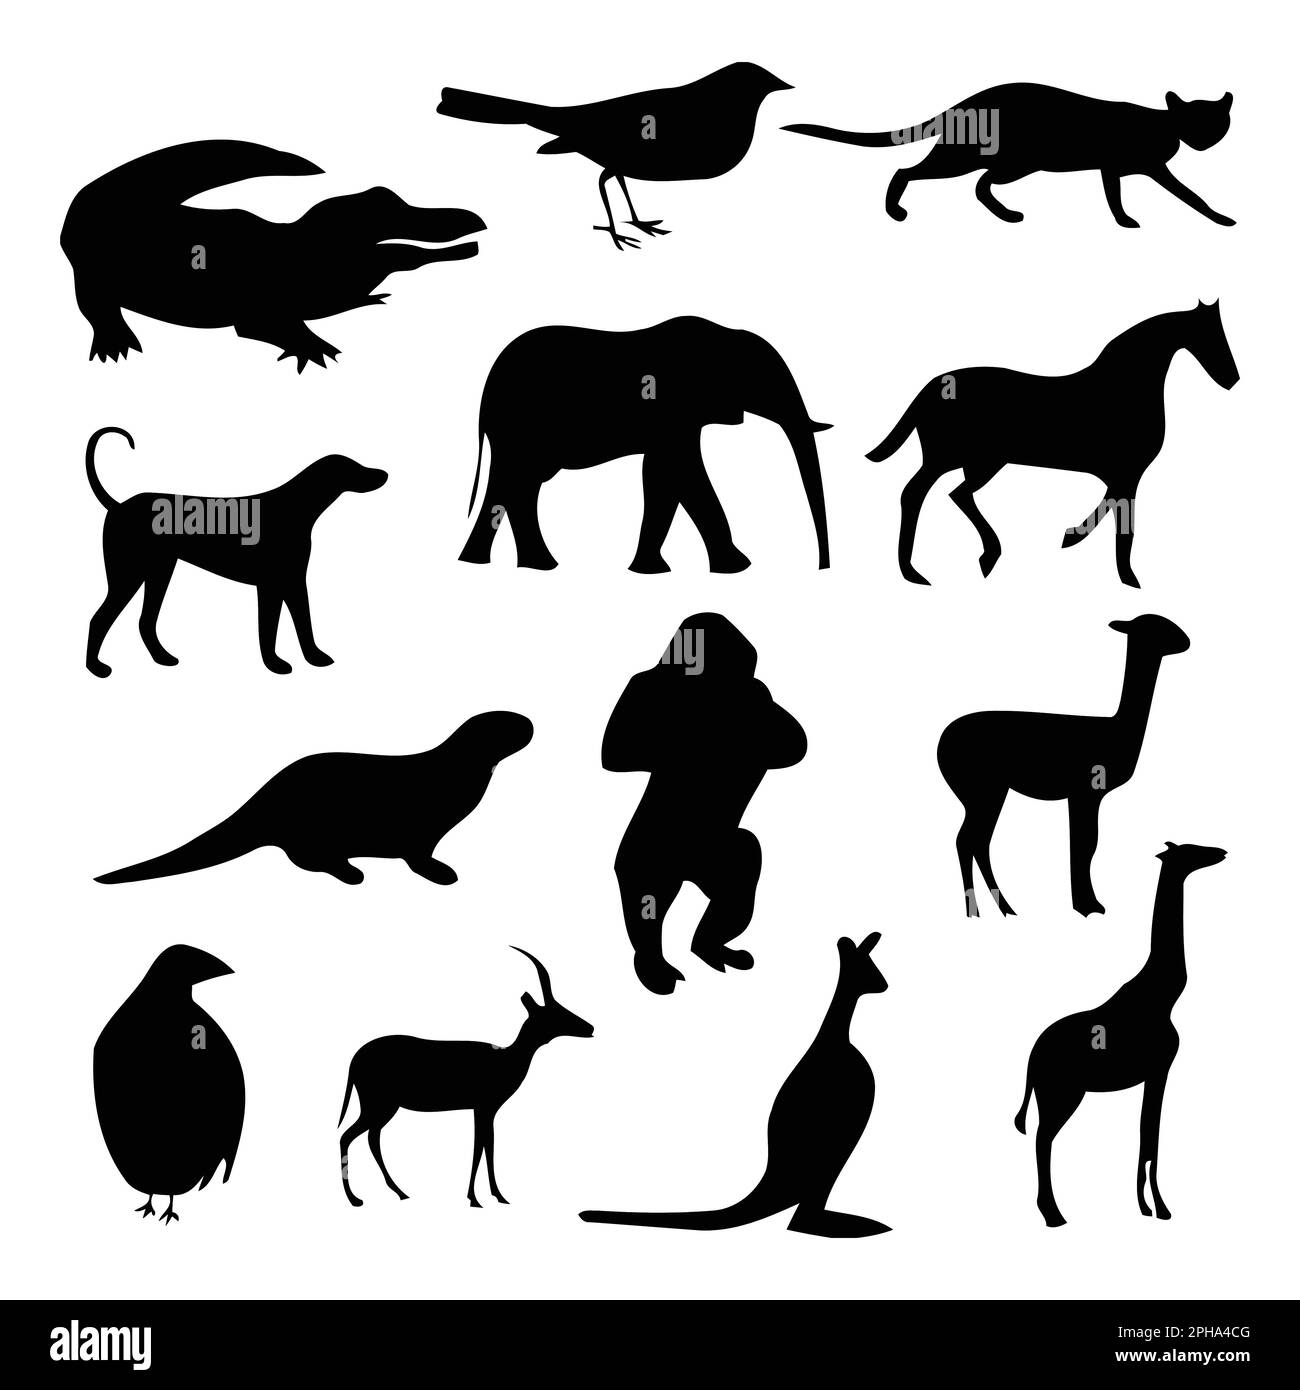 Die schwarzen Silhouetten der Tiere werden auf weißem Hintergrund isoliert dargestellt. Vektordarstellung Stock Vektor